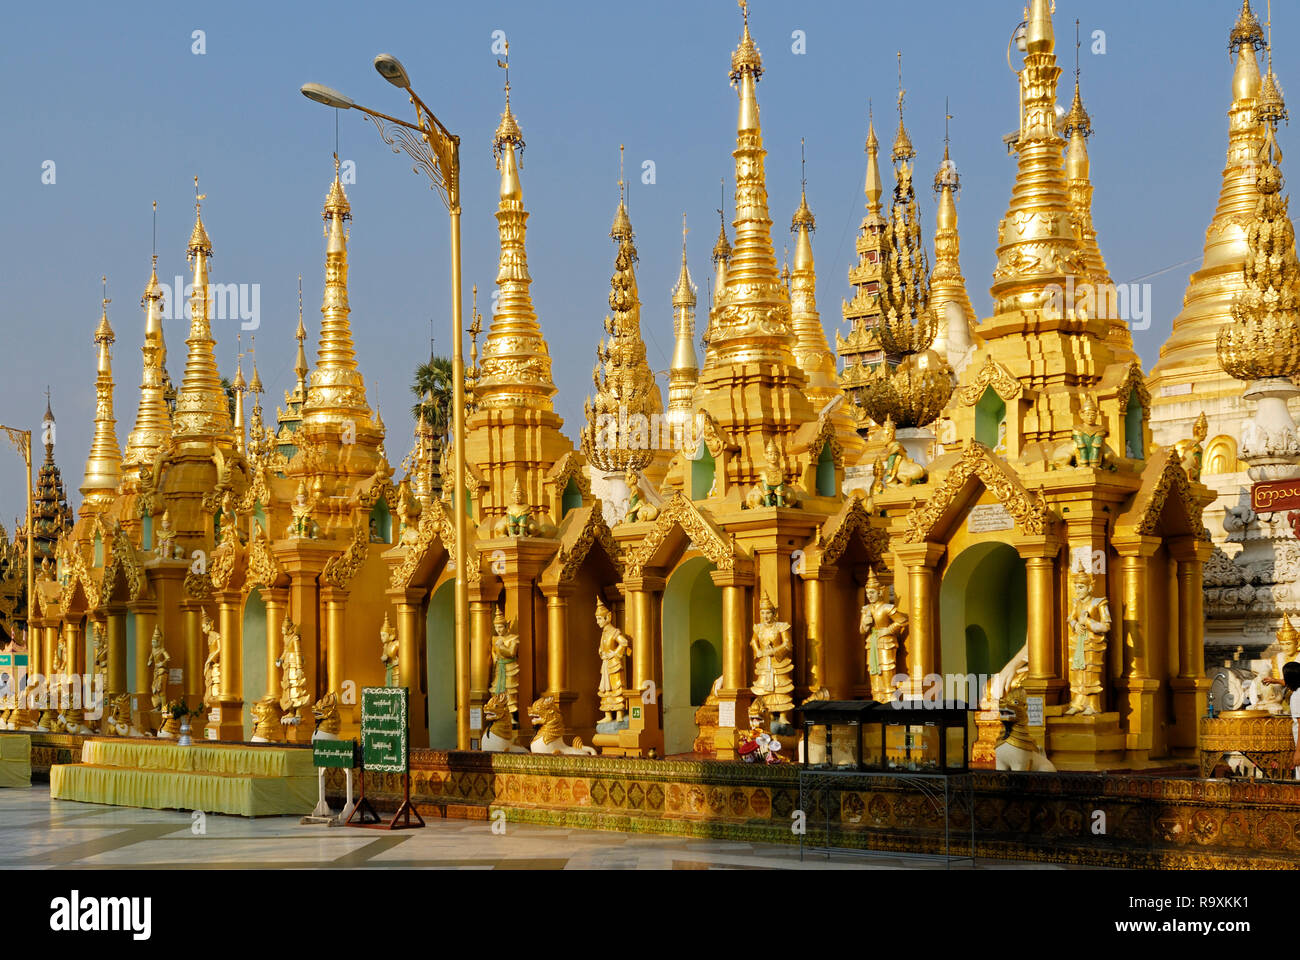 ASIEN, MYANMAR, BURMA, BIRMA, YANGON, RANGUN, SHWEDAGON PAGODE, eine der schoensten und bekanntesten Pagoden in Myanmar und Asien und wichtiger Pilger Stock Photo